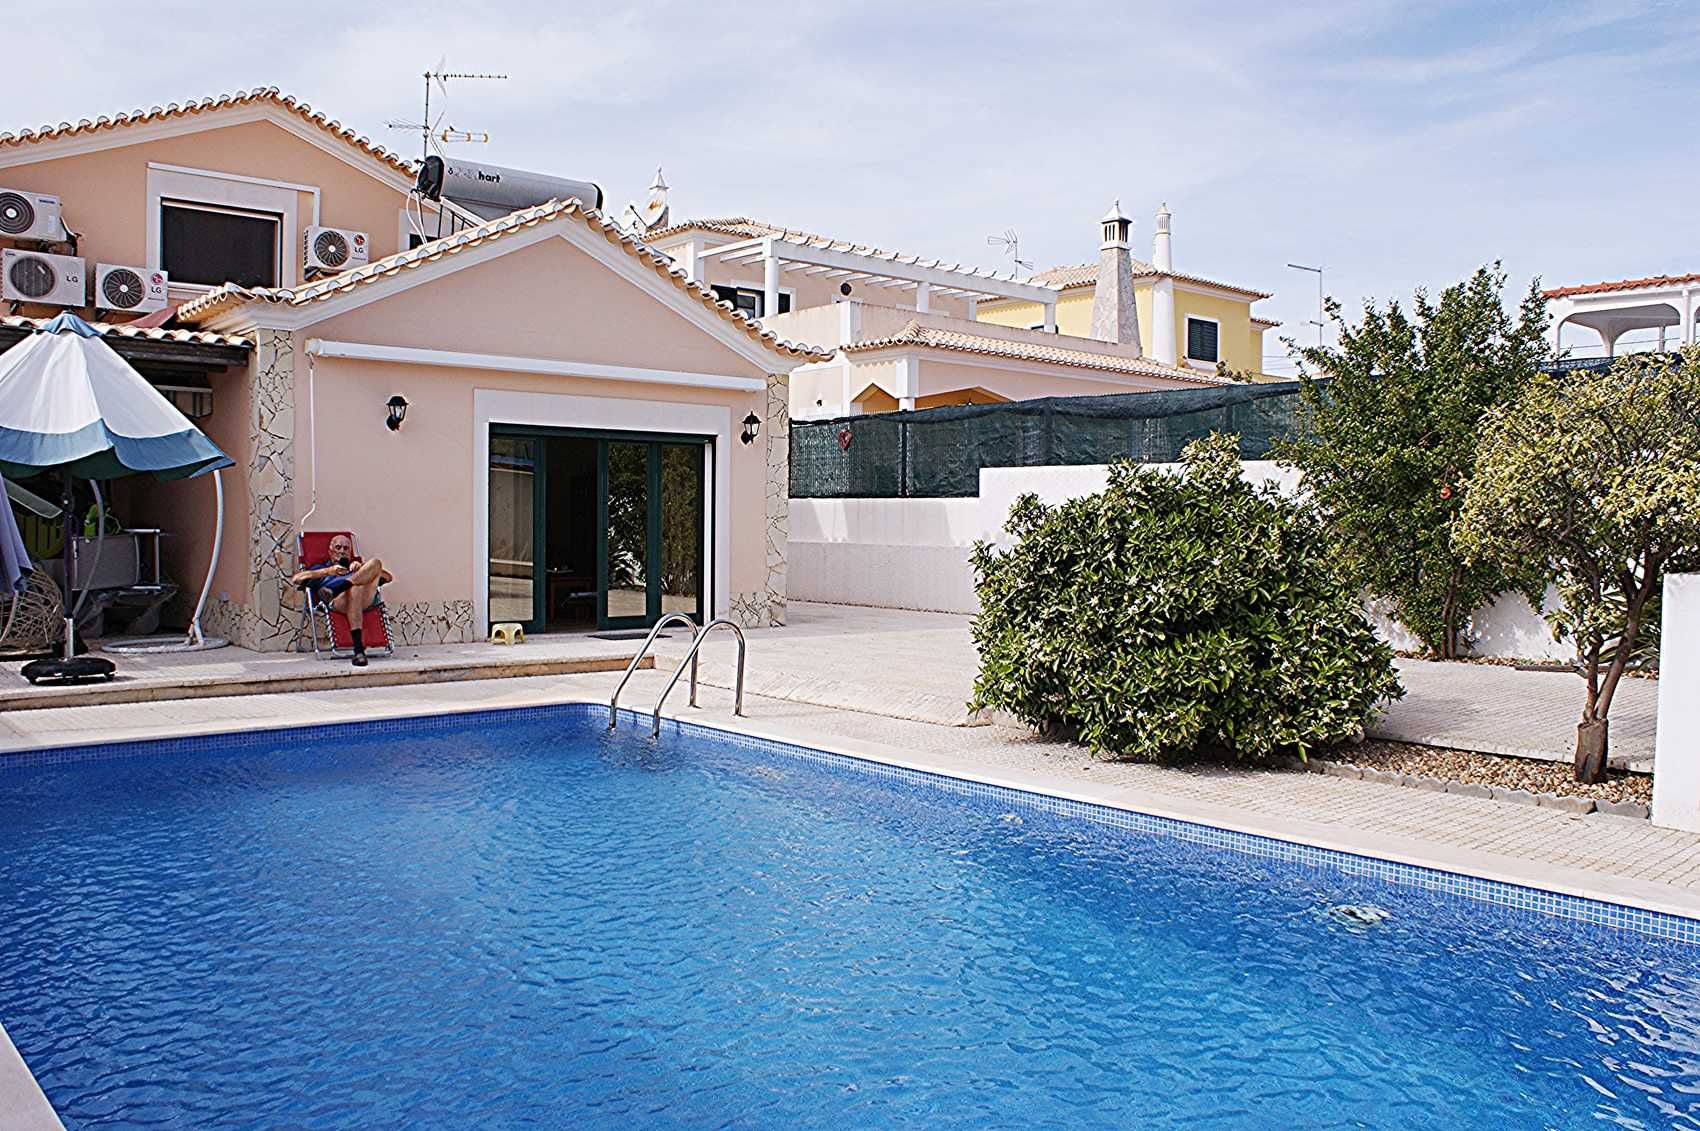 Casa de férias de luxo, com piscina privada e garagem.